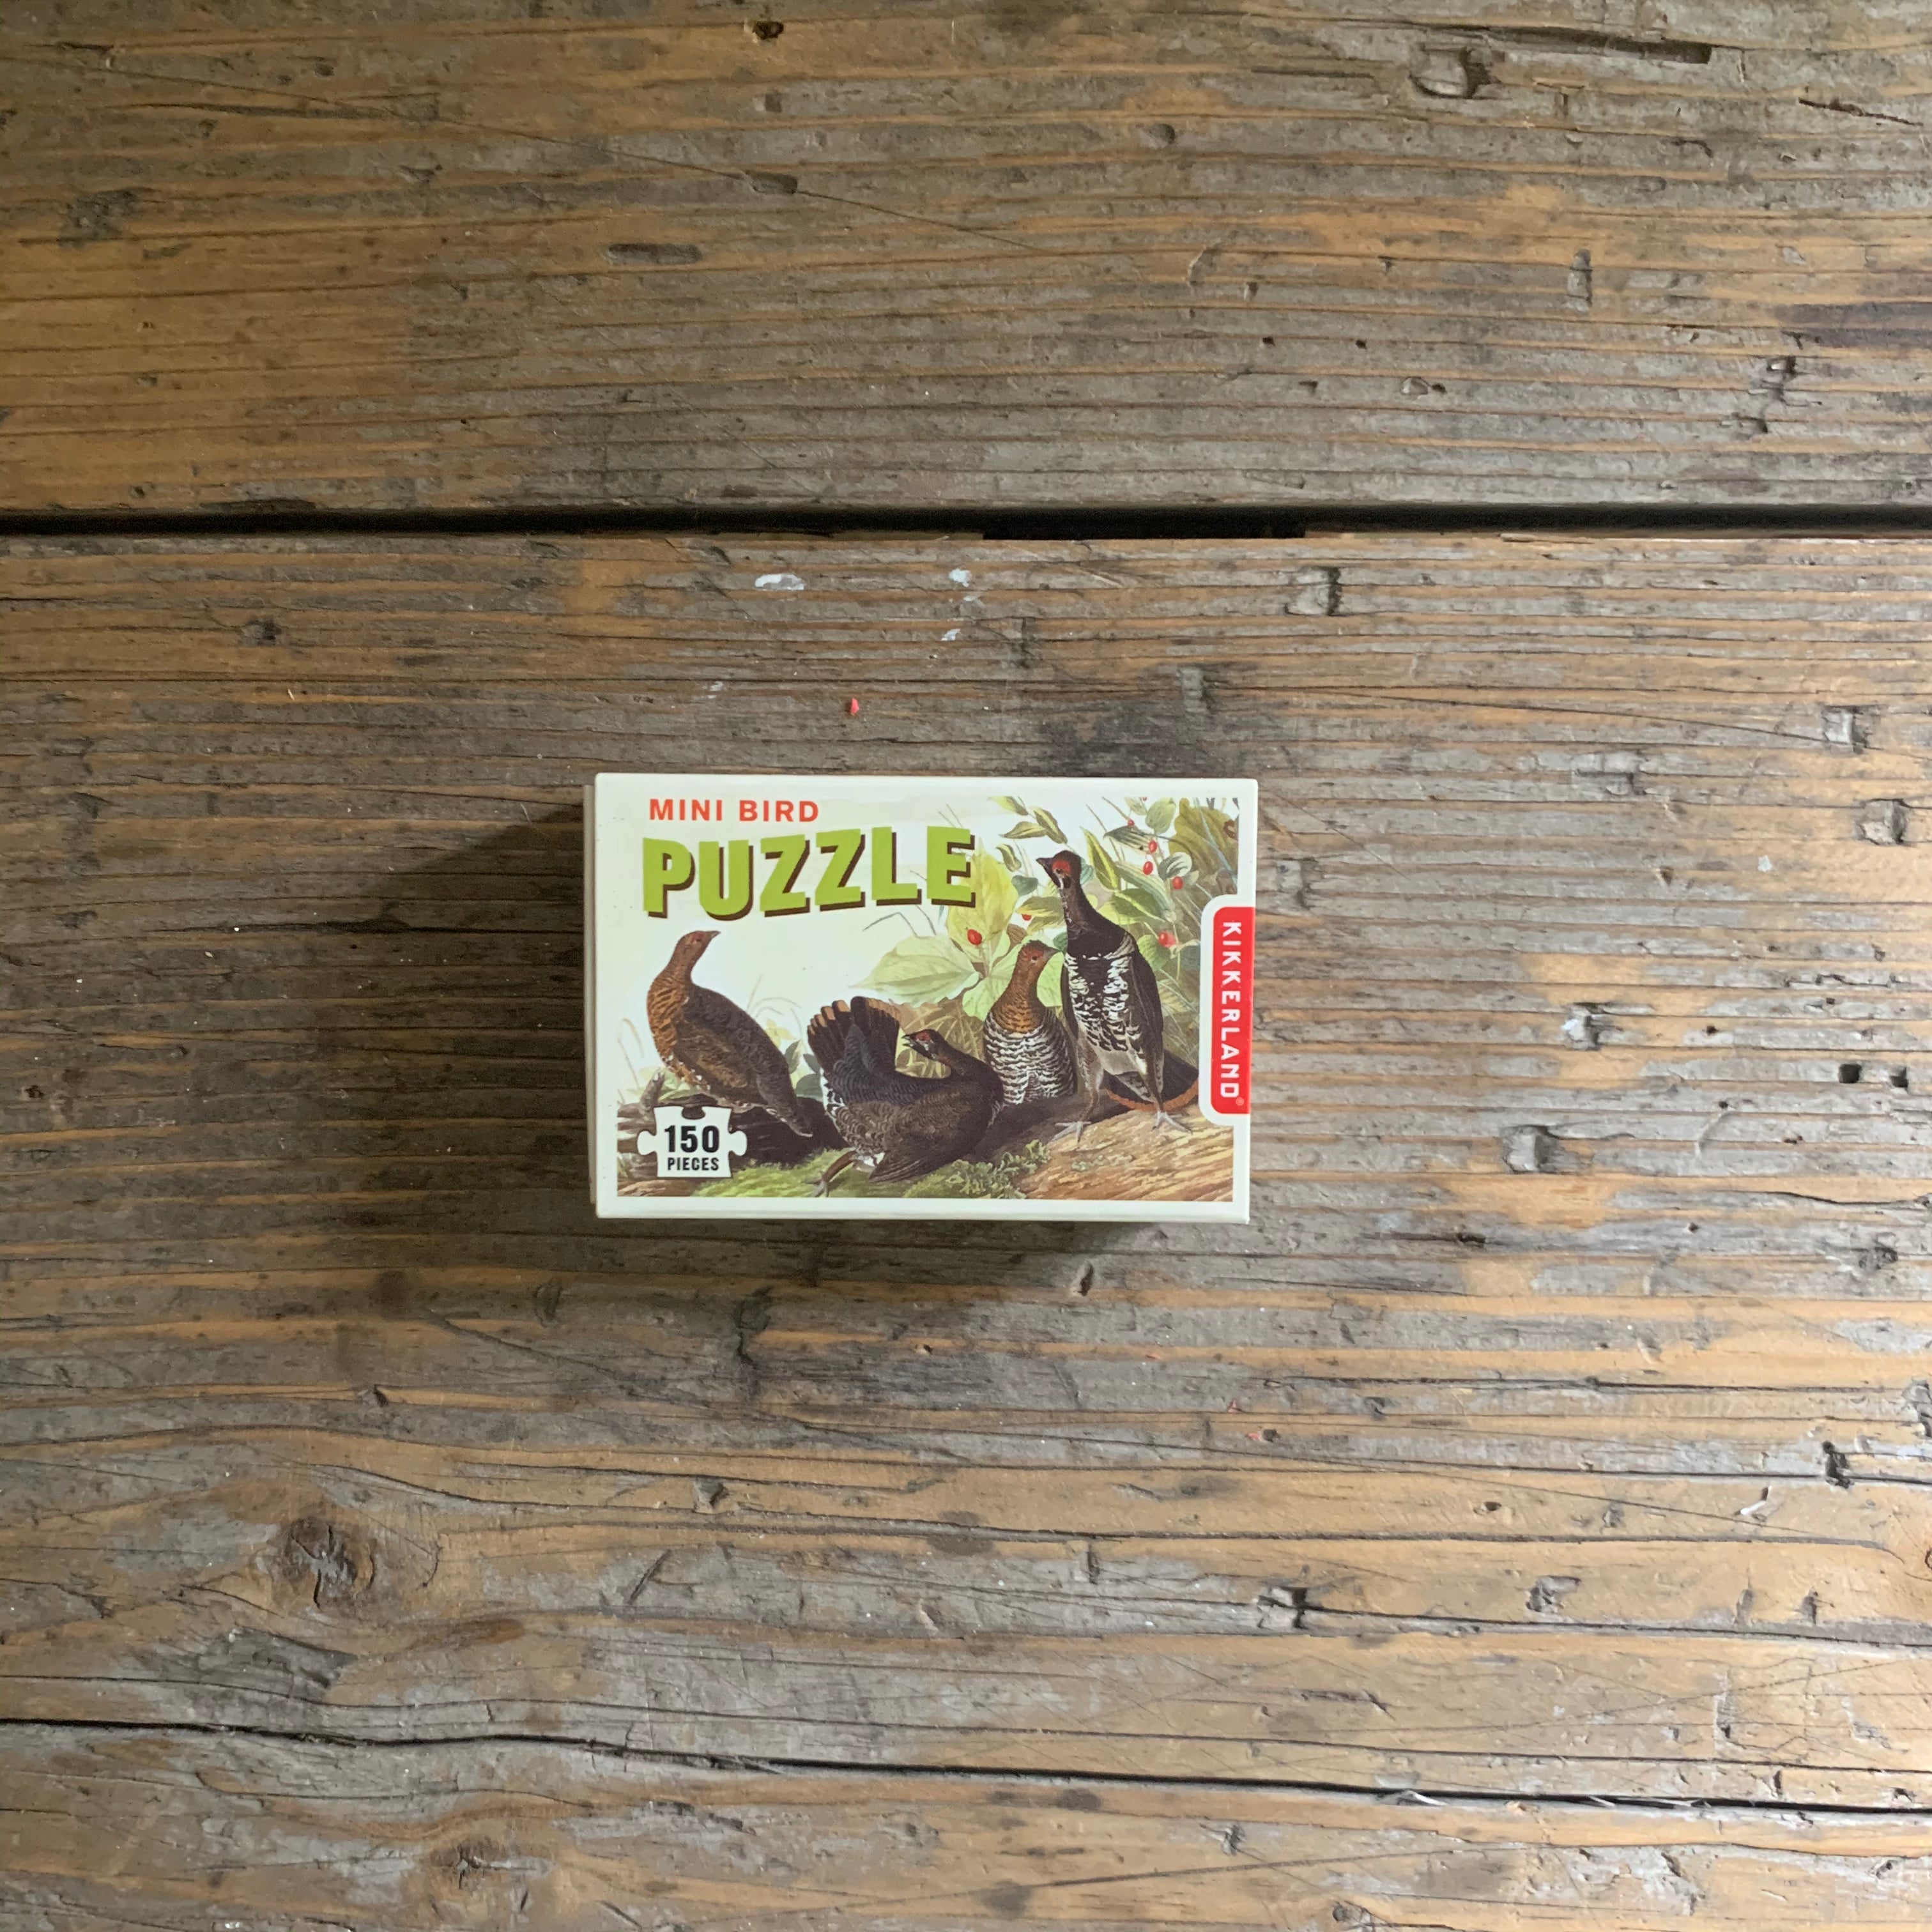 audubon bird "matchbox" puzzle